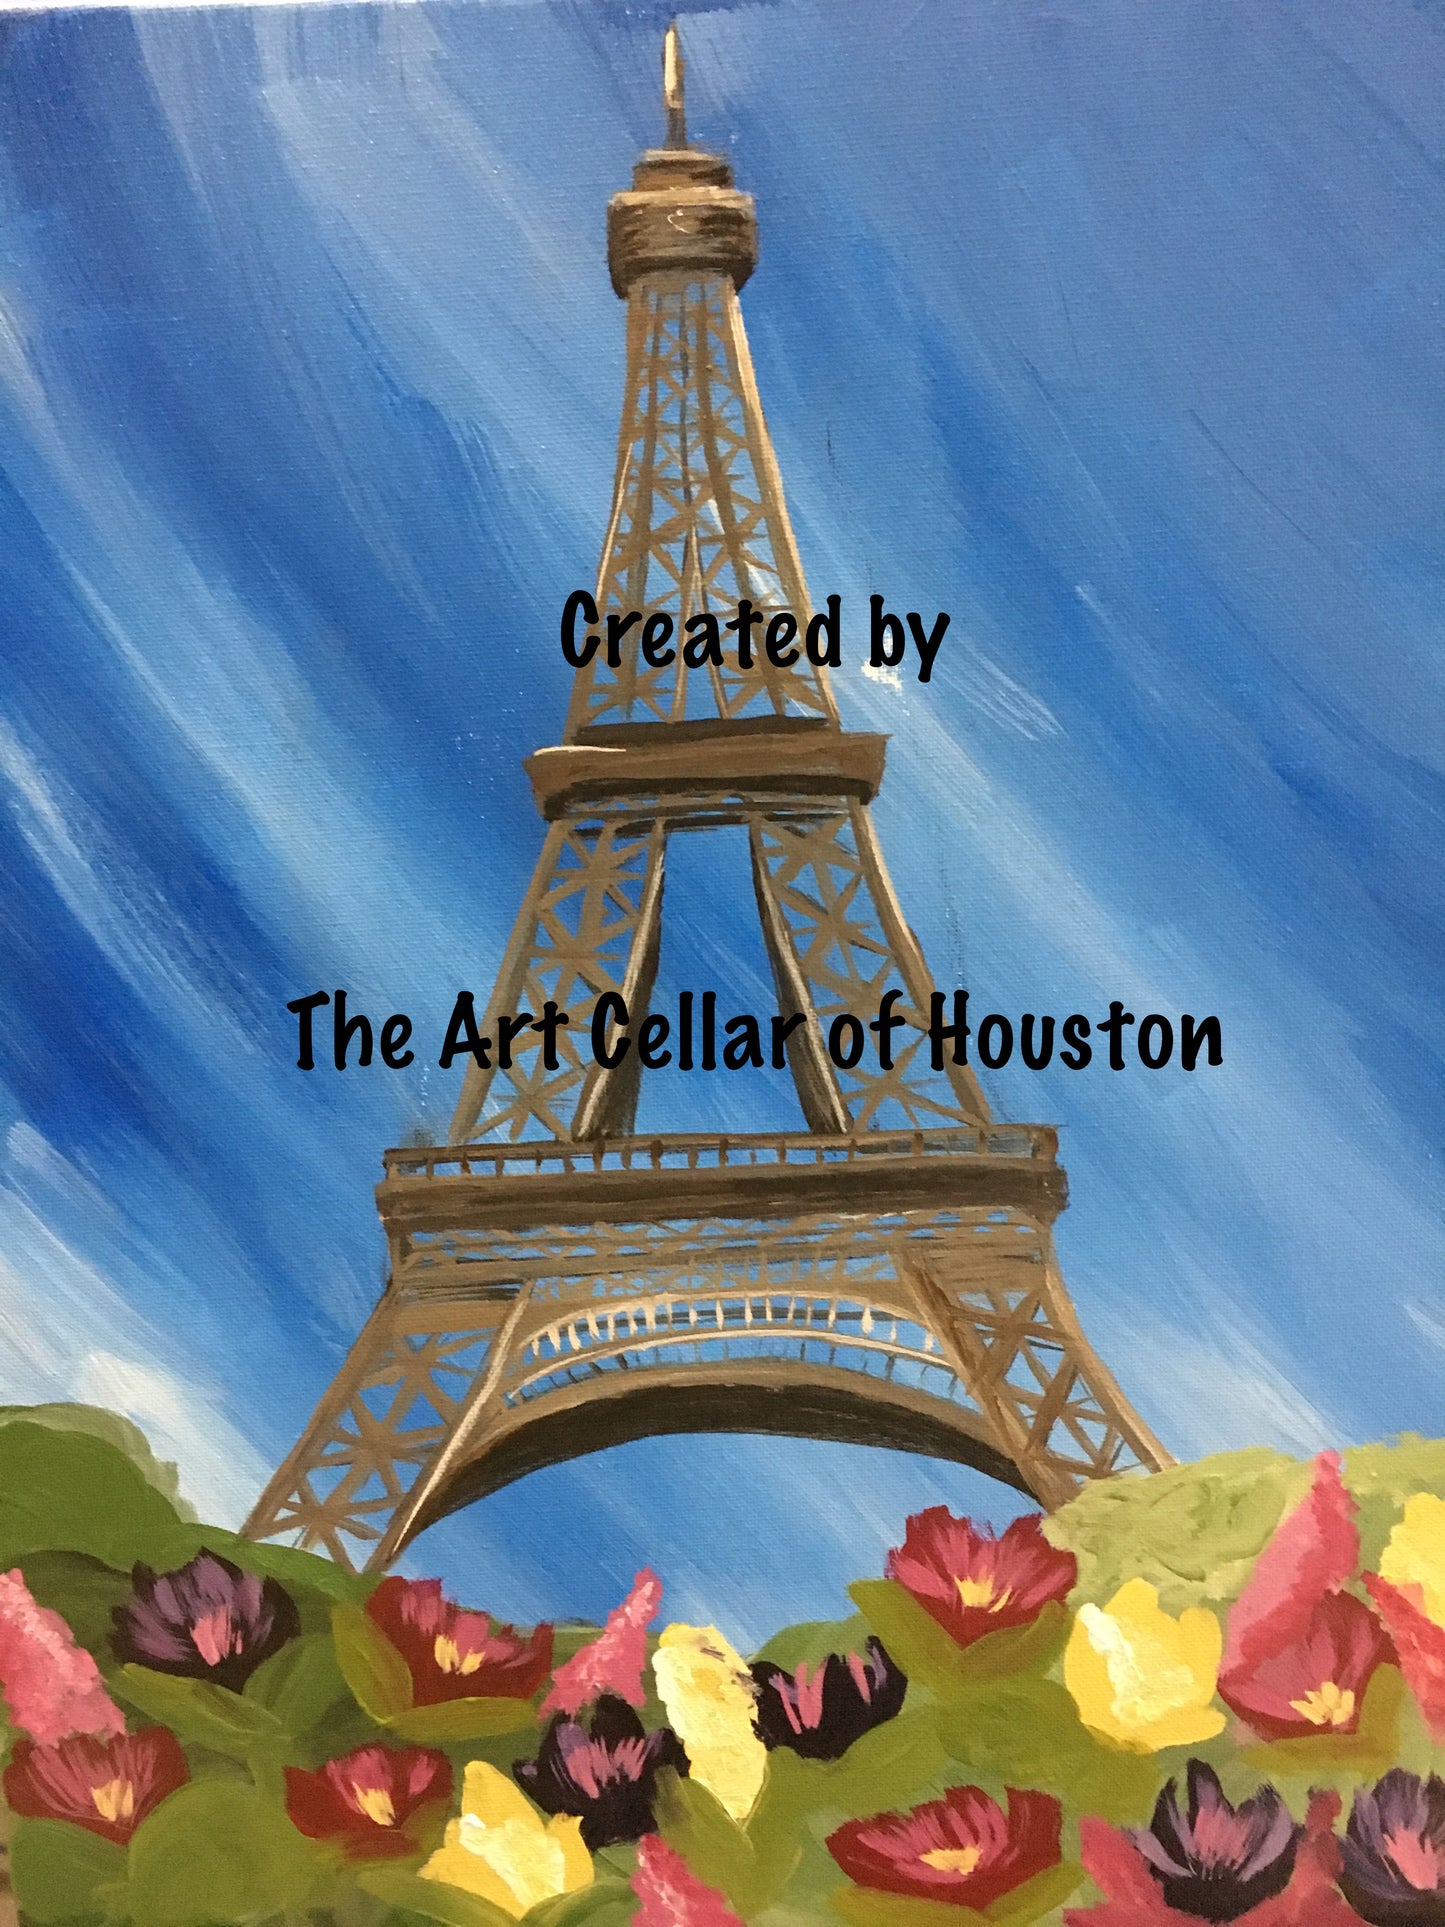 Sat, Feb 1st, 7-10p “From Paris with Love” Public Houston Wine & Paint